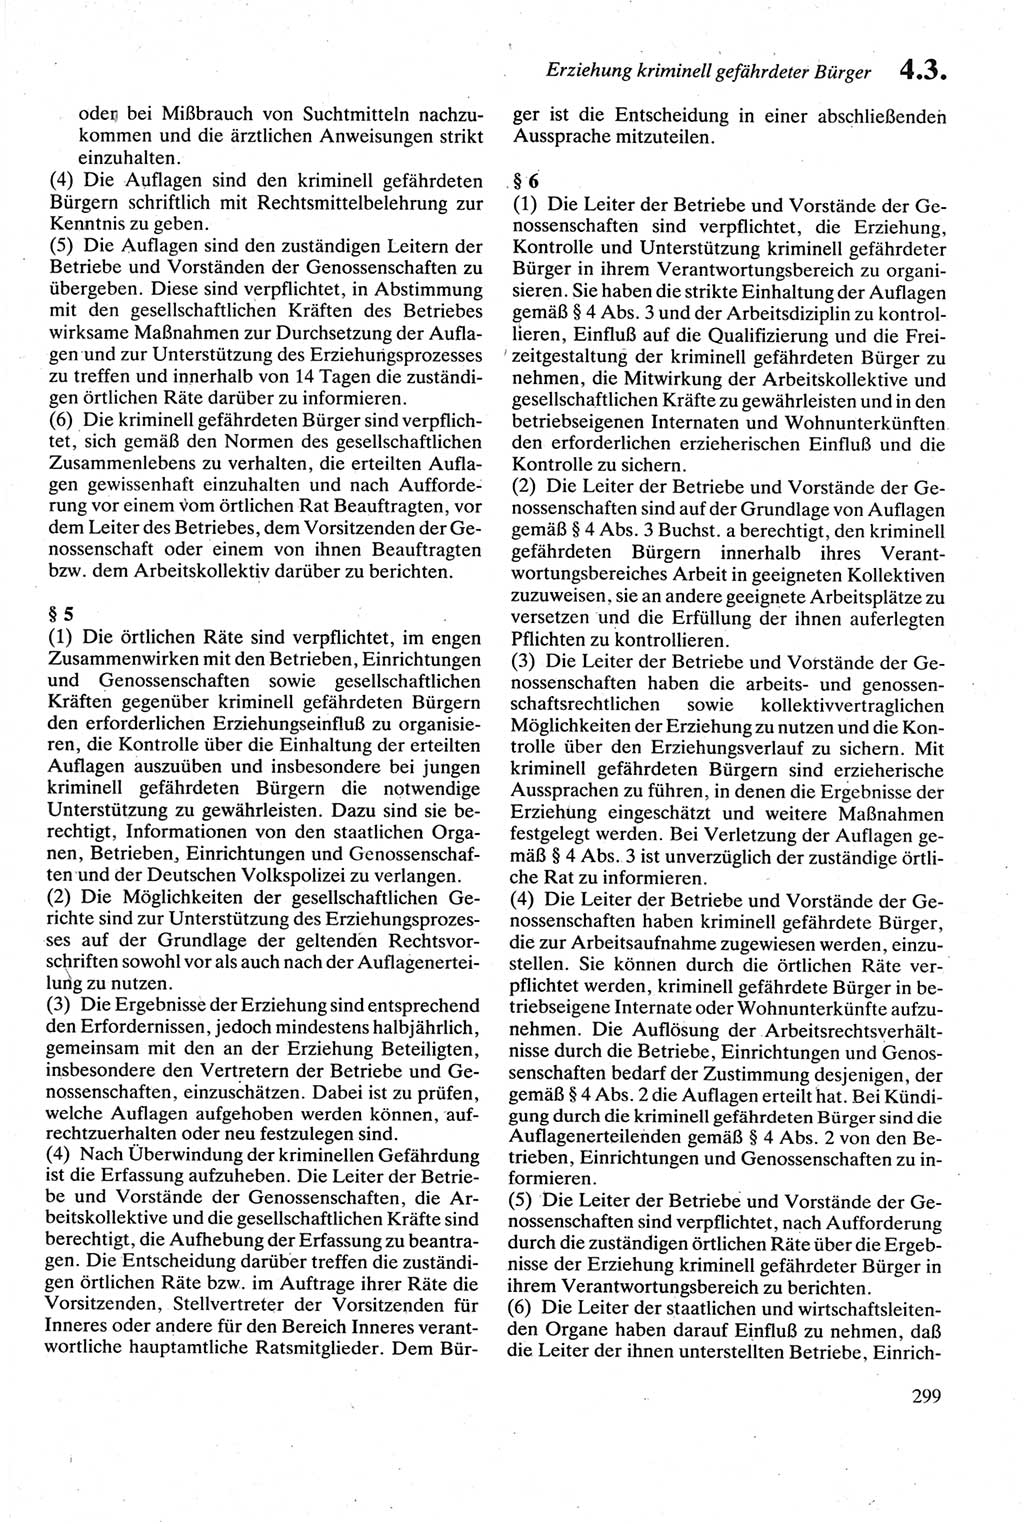 Strafgesetzbuch (StGB) der Deutschen Demokratischen Republik (DDR) sowie angrenzende Gesetze und Bestimmungen 1979, Seite 299 (StGB DDR Ges. Best. 1979, S. 299)